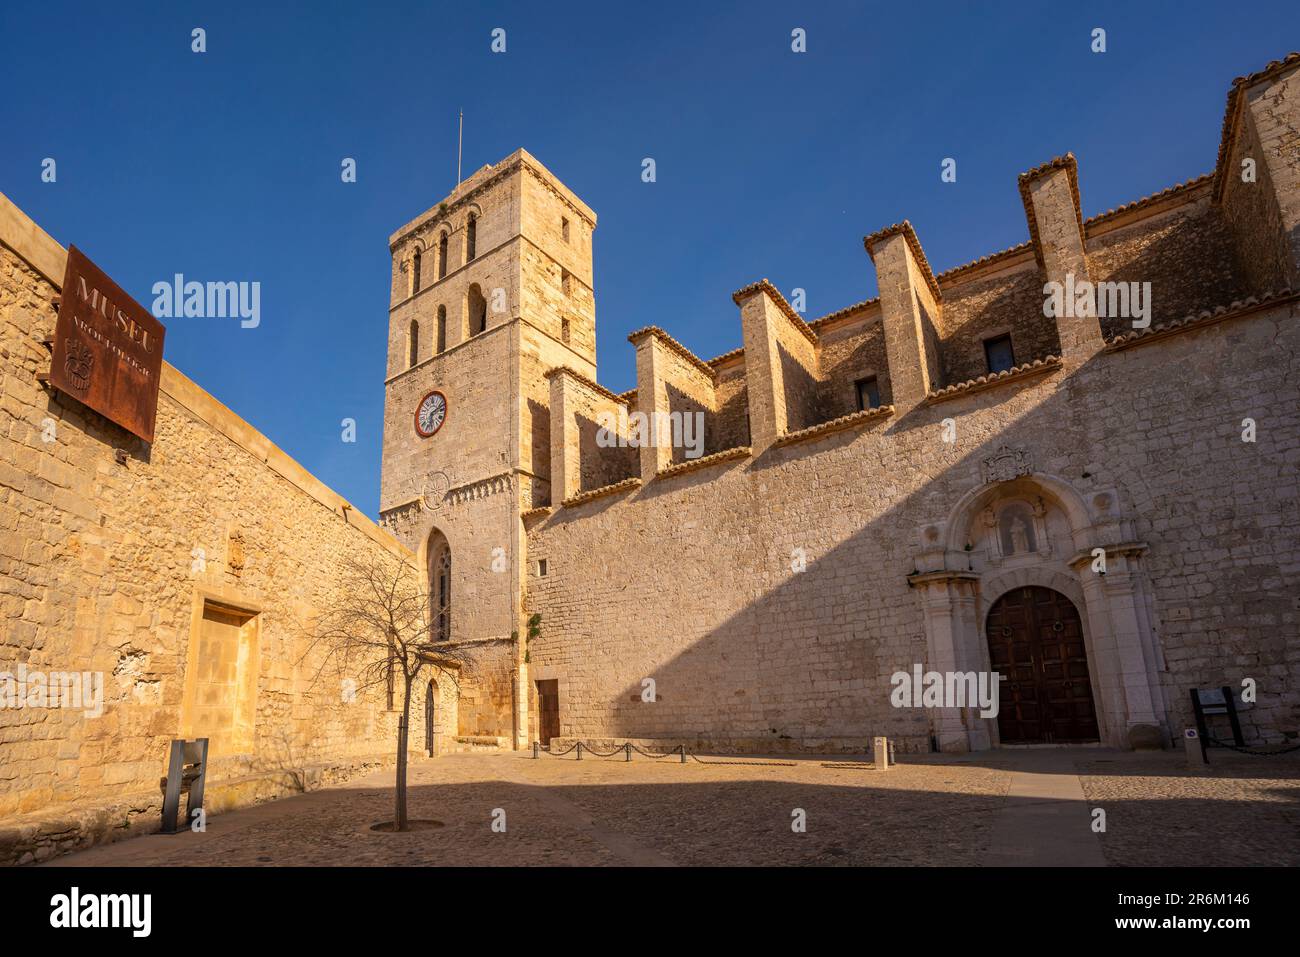 Vista della cattedrale, patrimonio dell'umanità dell'UNESCO, città di Ibiza, Eivissa, Isole Baleari, Spagna, Mediterraneo, Europa Foto Stock